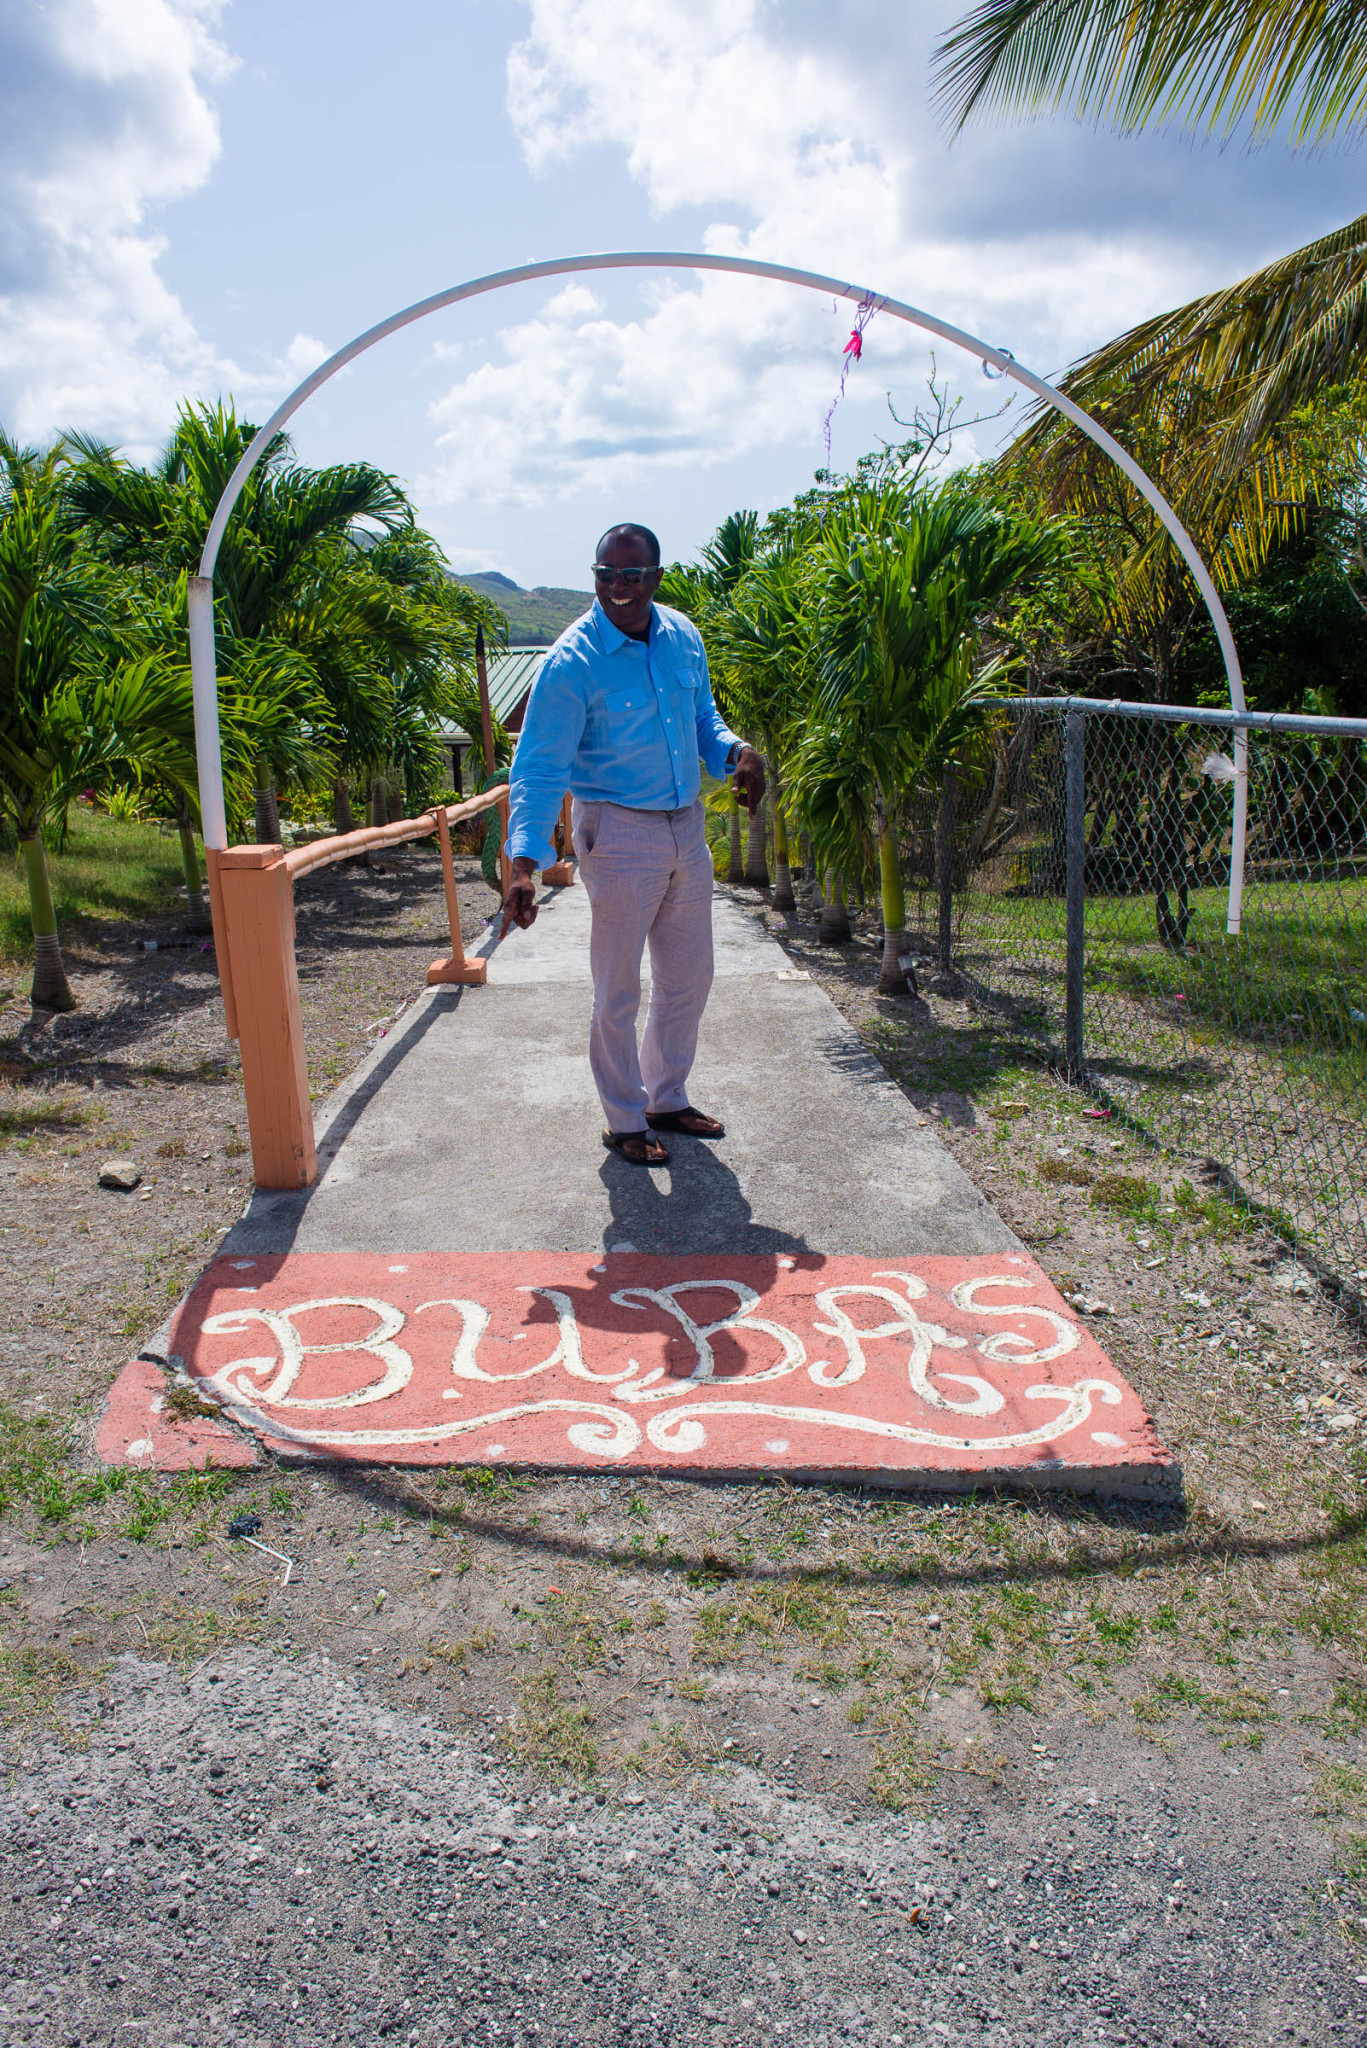 Buba's Antigua Entry Way by Patrick Bennett